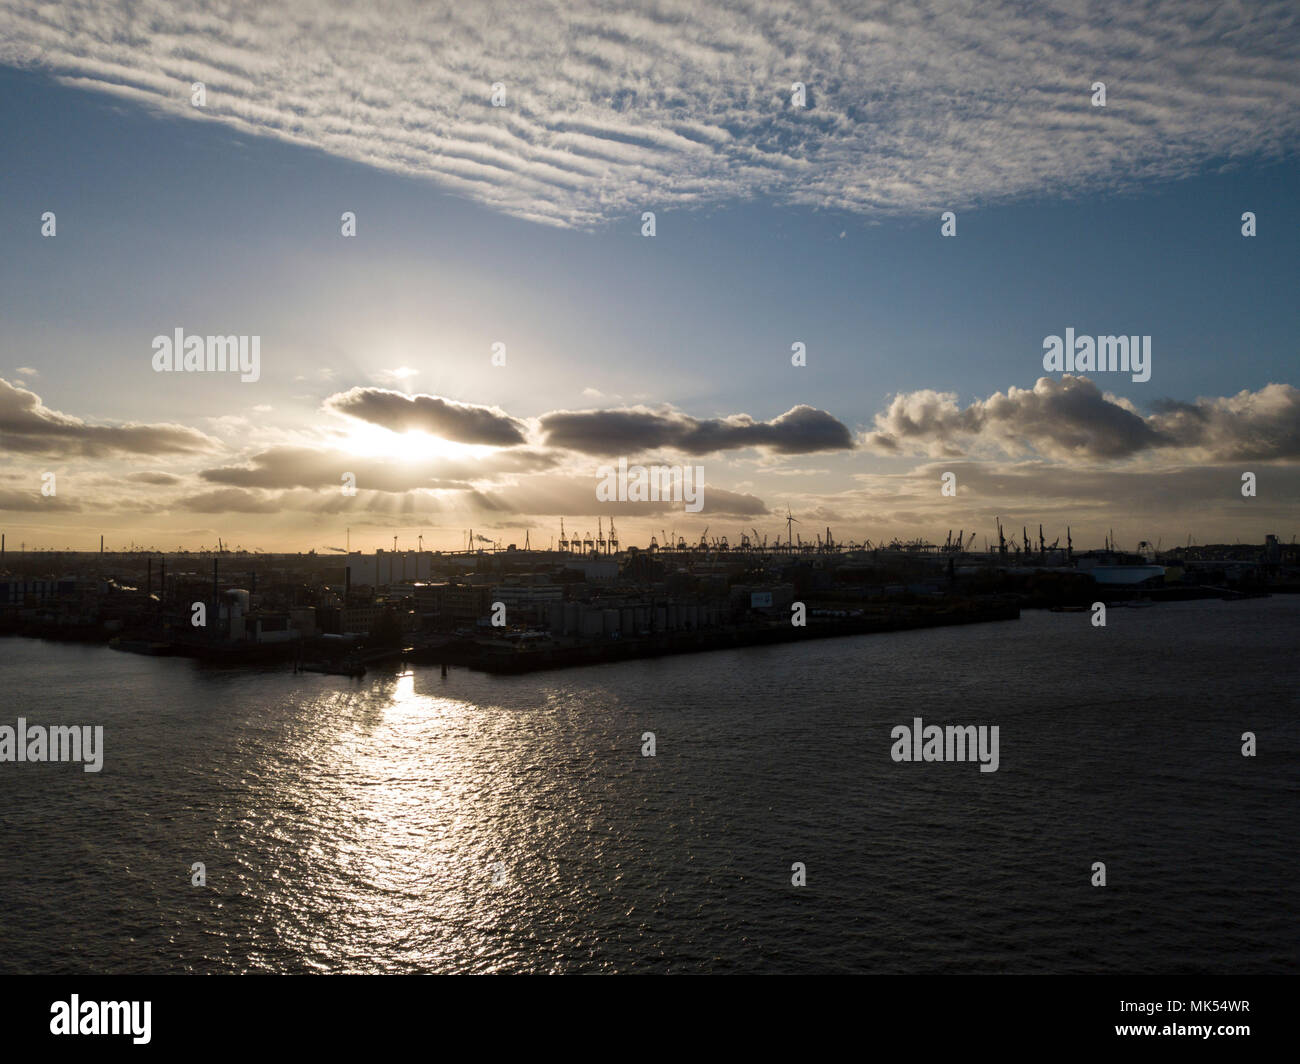 Hamburger Hafen mit seinen Kränen in der Nachtmittagssonne Stock Photo